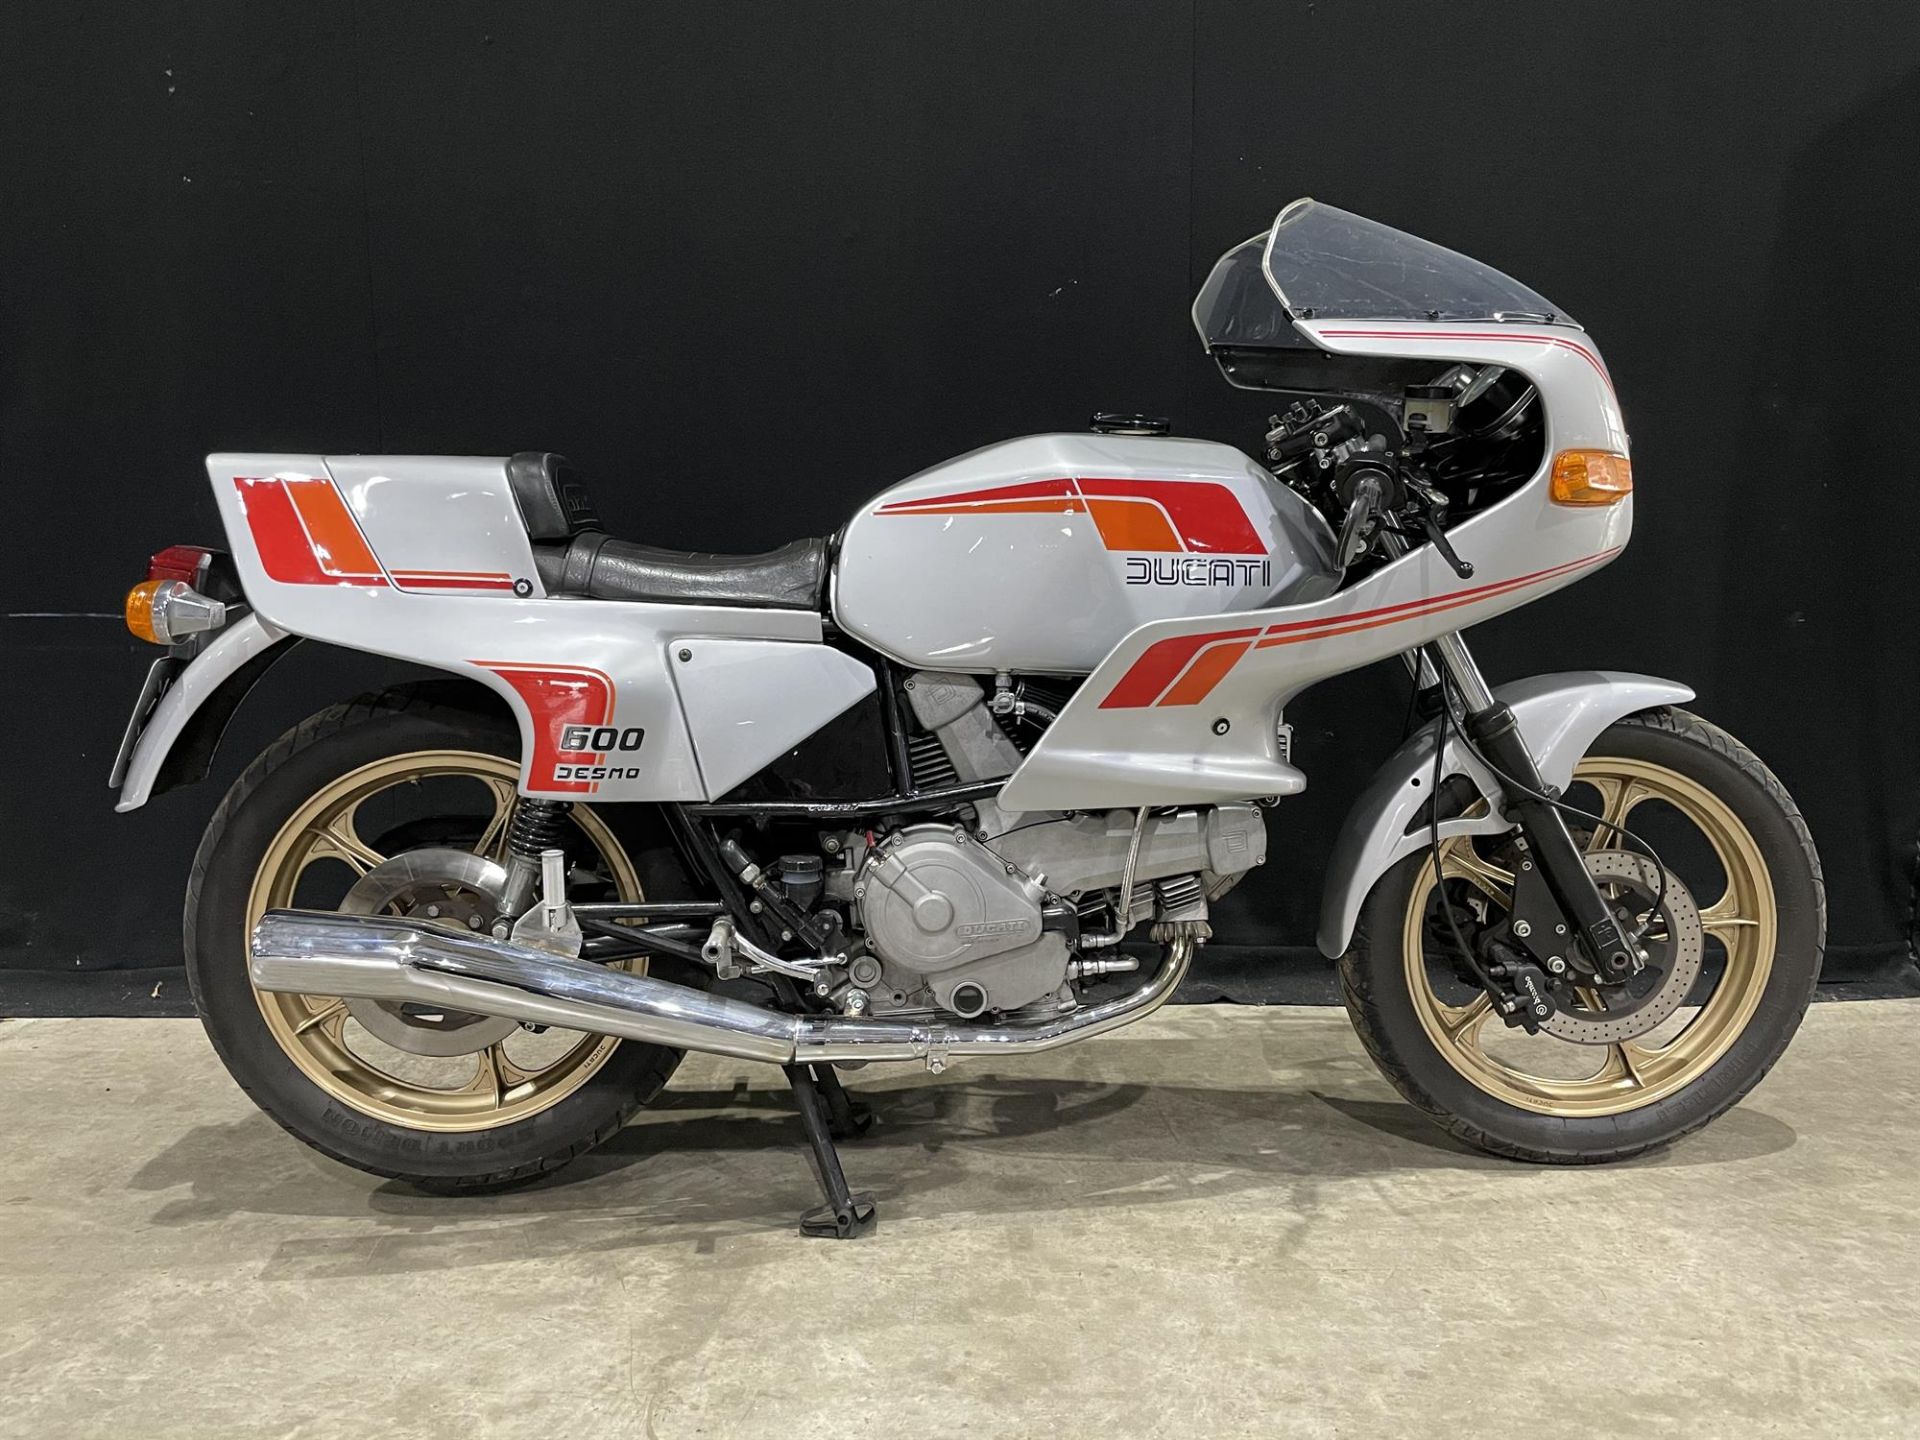 1983 Ducati 600 SL Pantah